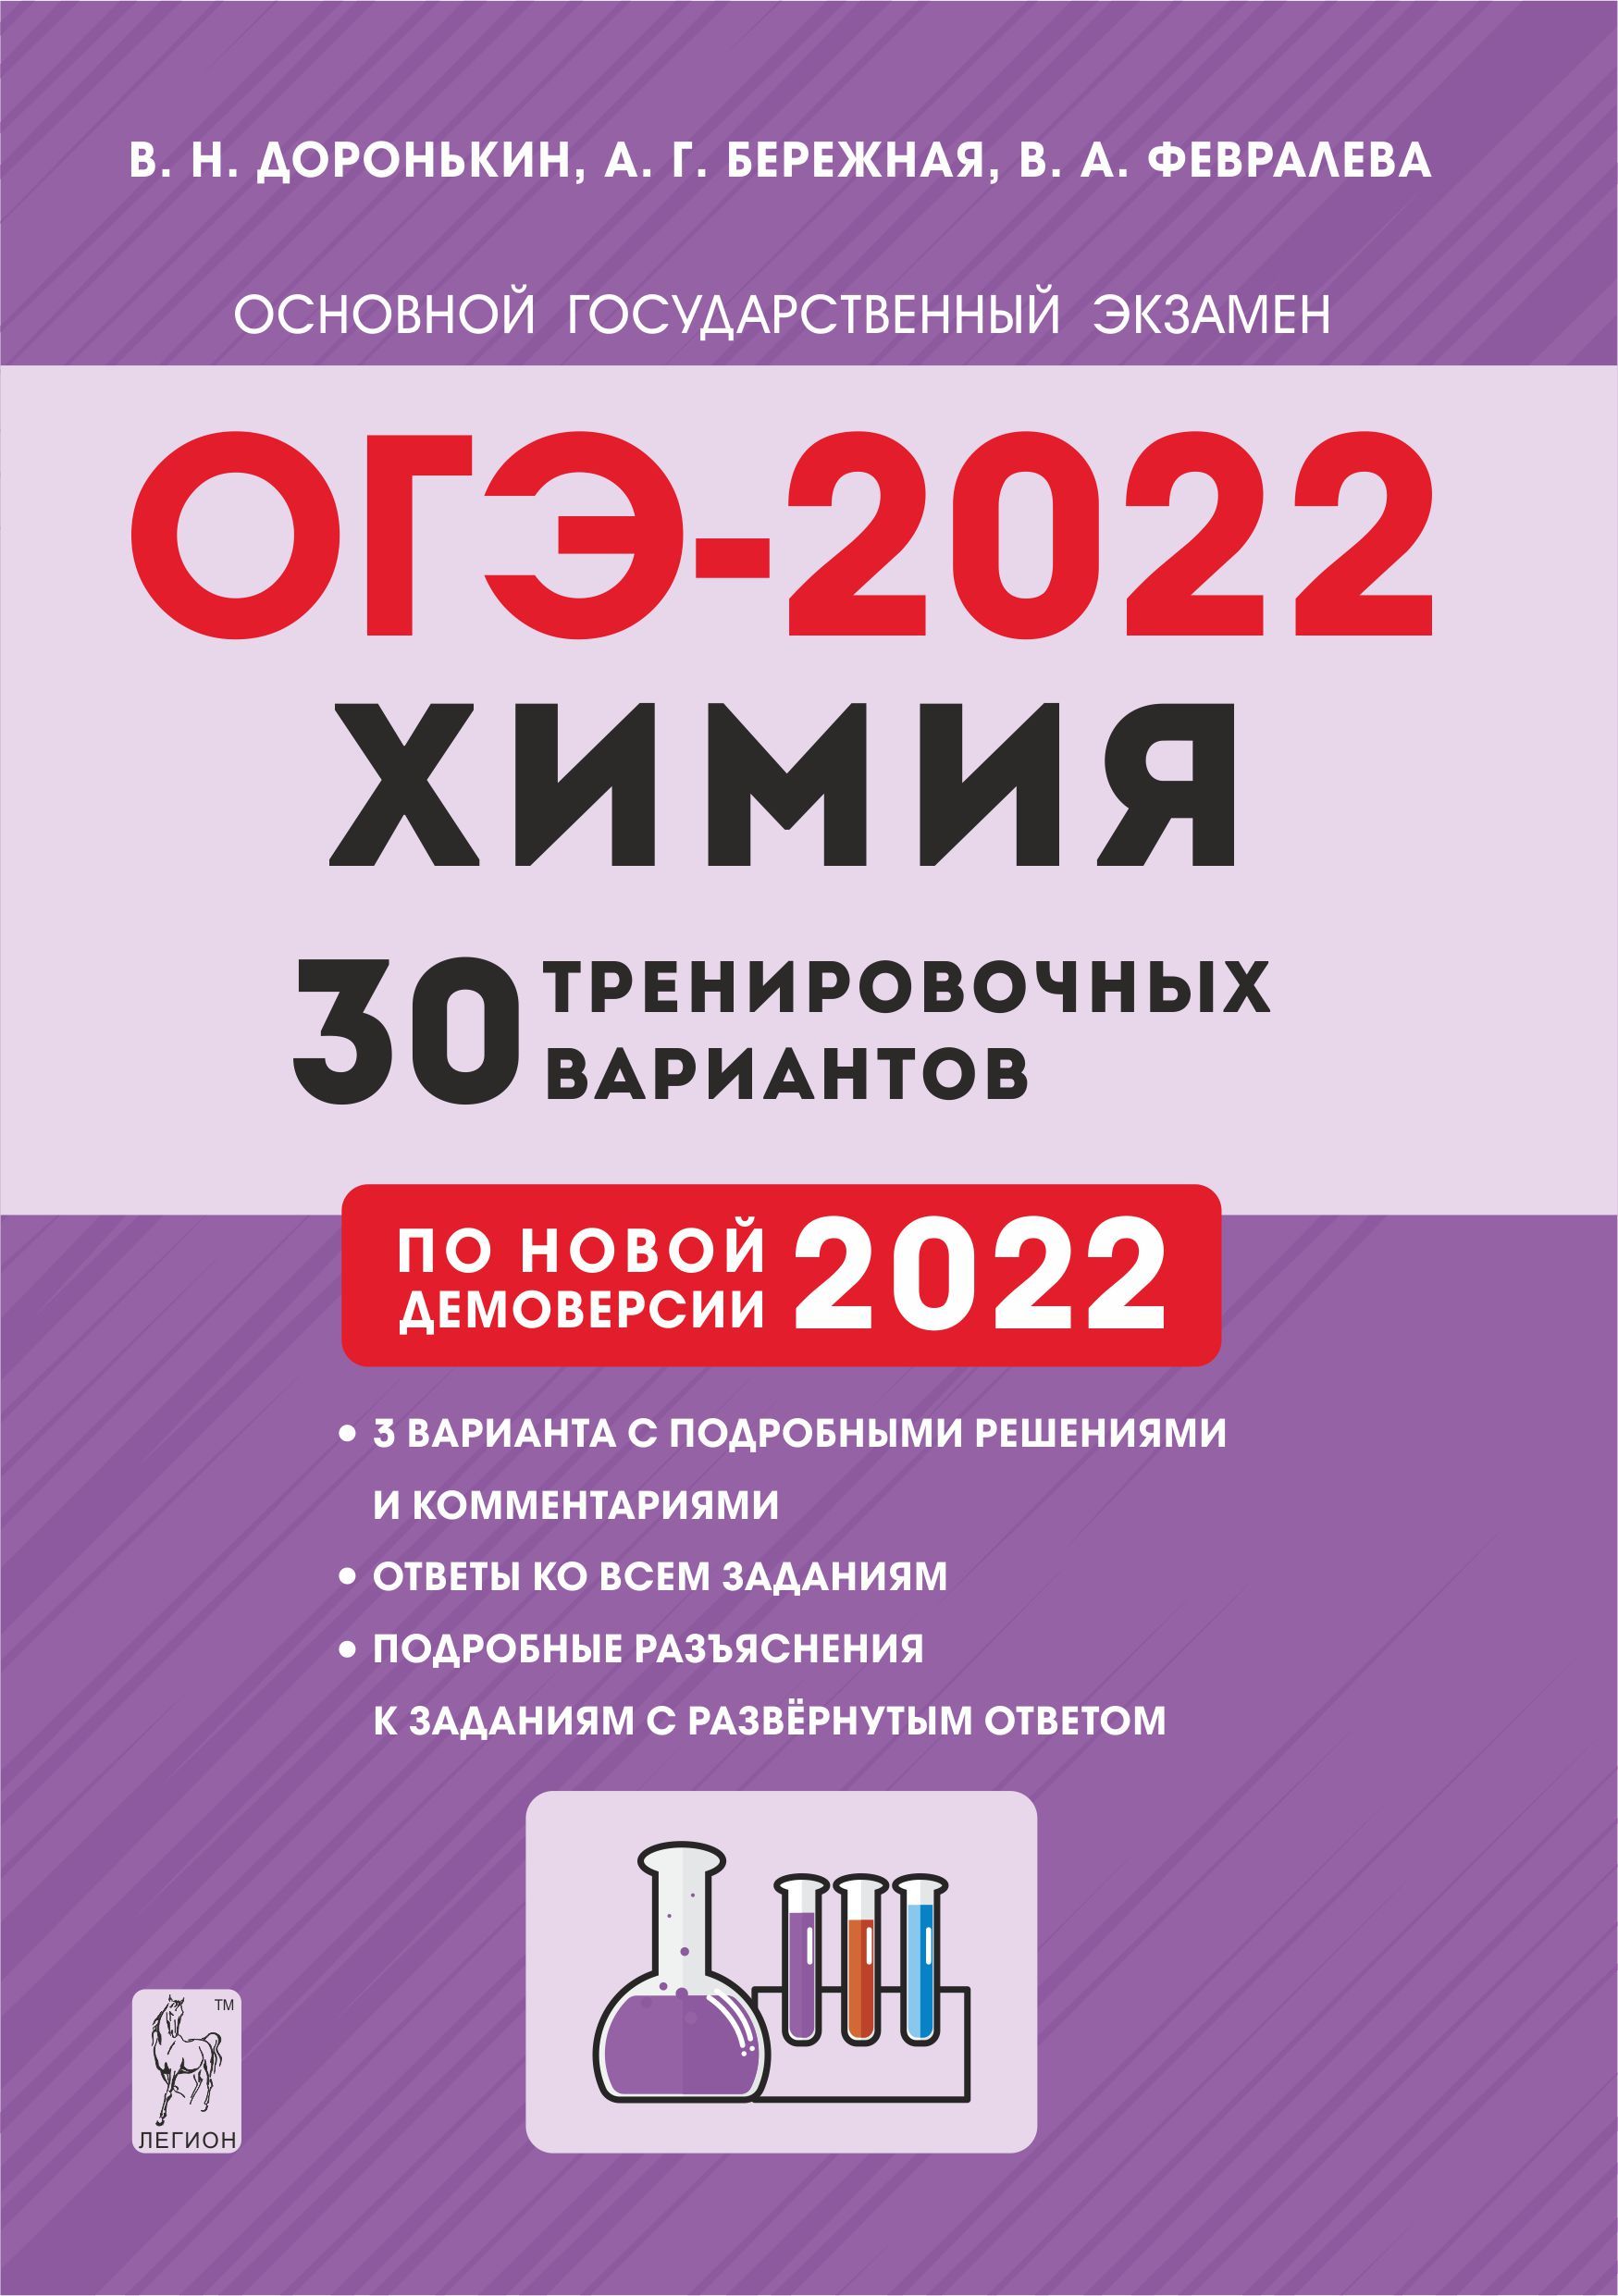 Химия. Подготовка к ОГЭ-2022. 9 класс. 30 тренировочных вариантов по демоверсии 2022 года